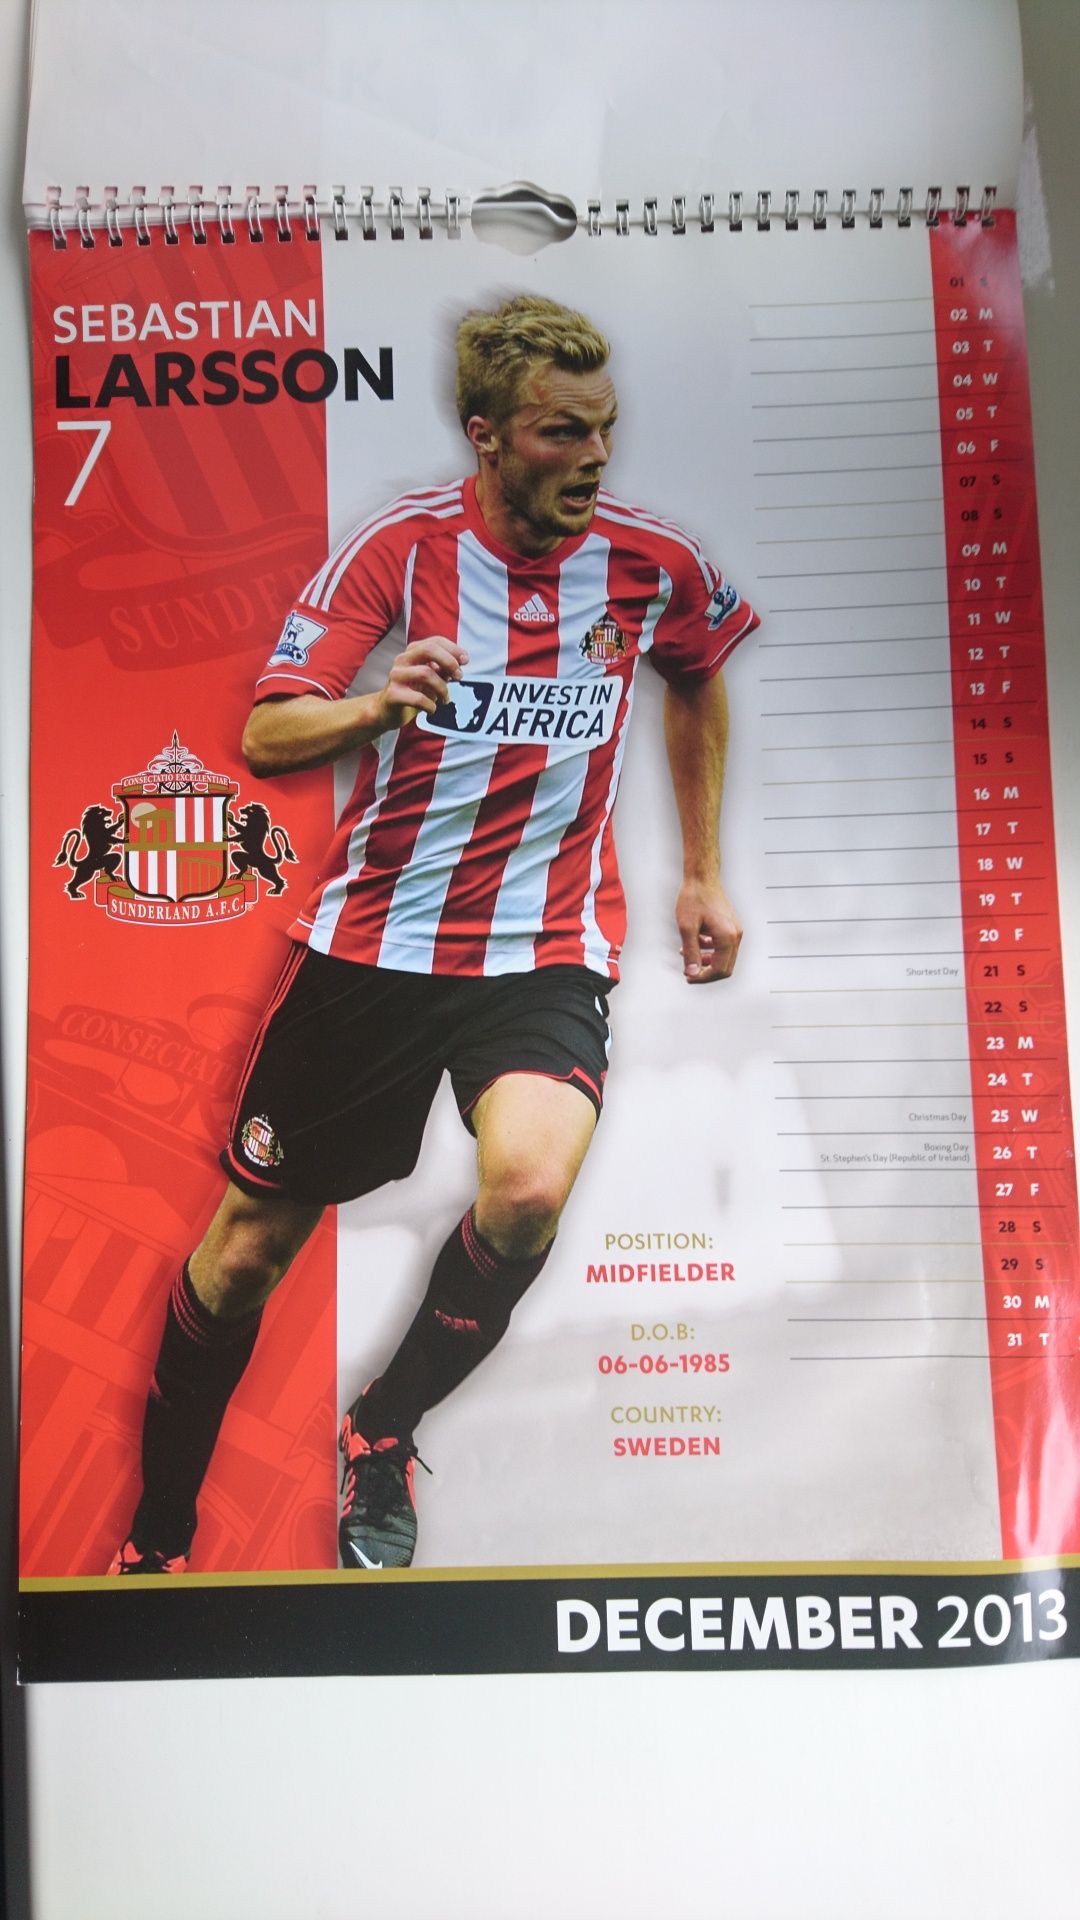 Календарь настенный Sunderland AFC 2013 год 29,5*43см